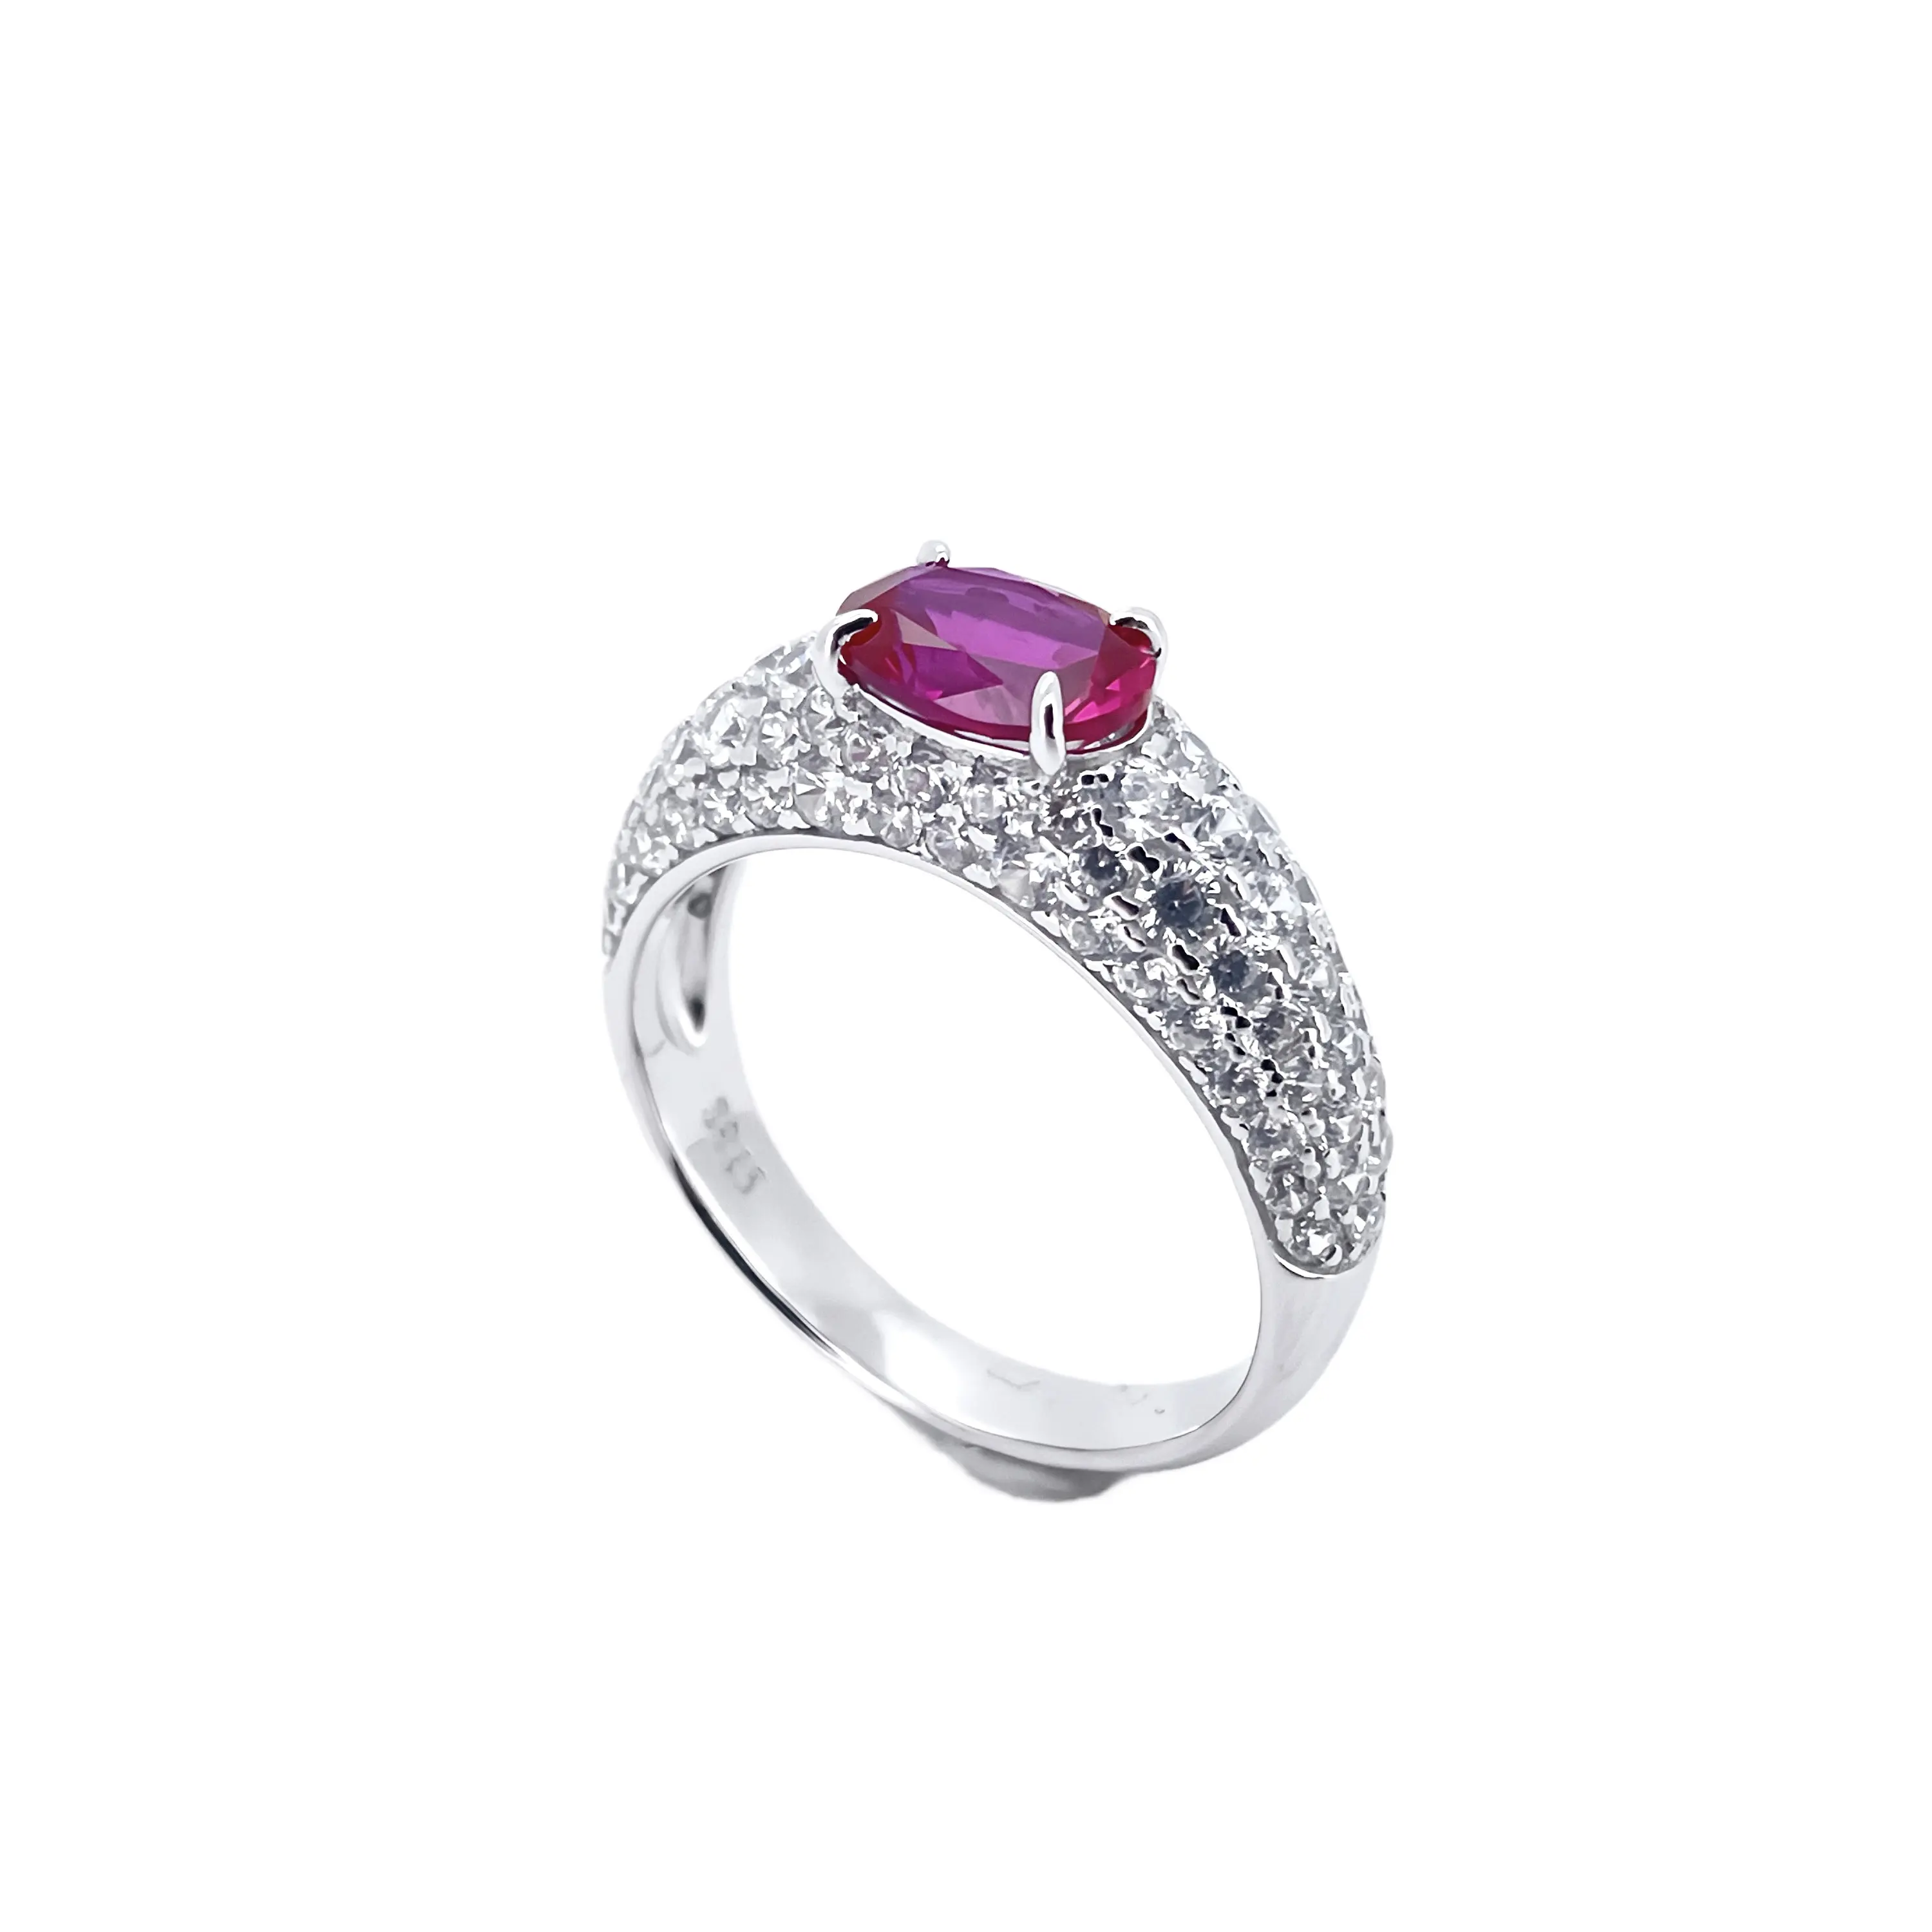 Dropshipping, joyería fina de alta calidad, anillo de piedras preciosas de Rubí, Diamante de moissanita, anillos casuales de Plata de Ley 925 para damas